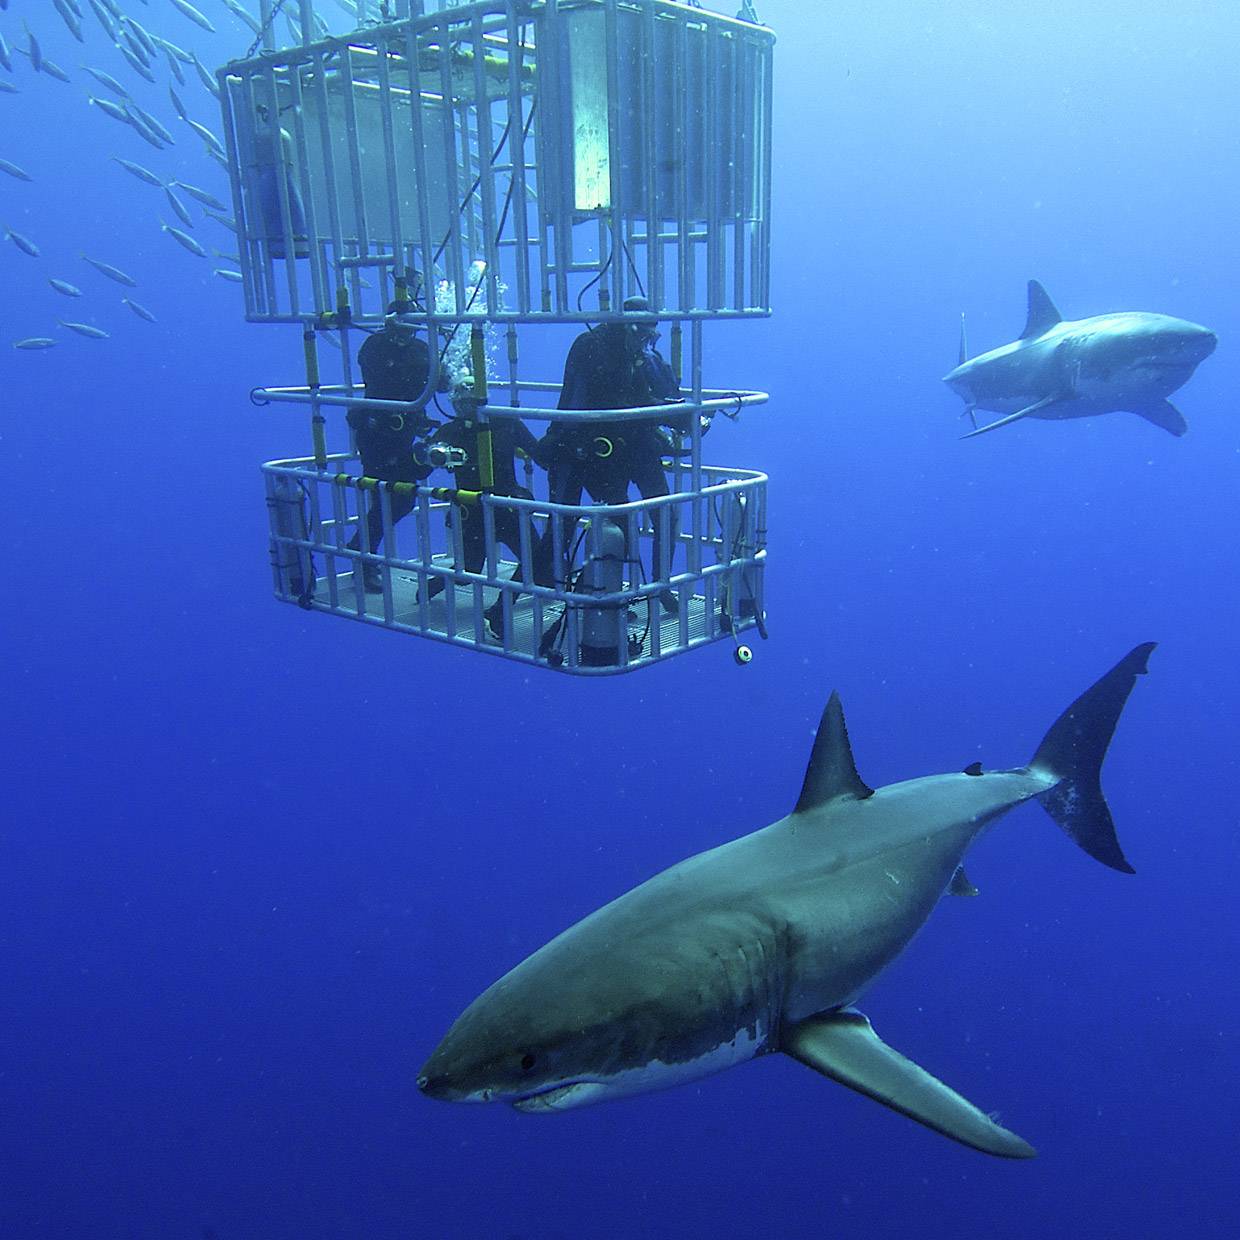 Quiz: Descubra qual tubarão você fisgaria no Shark Tank Brasil